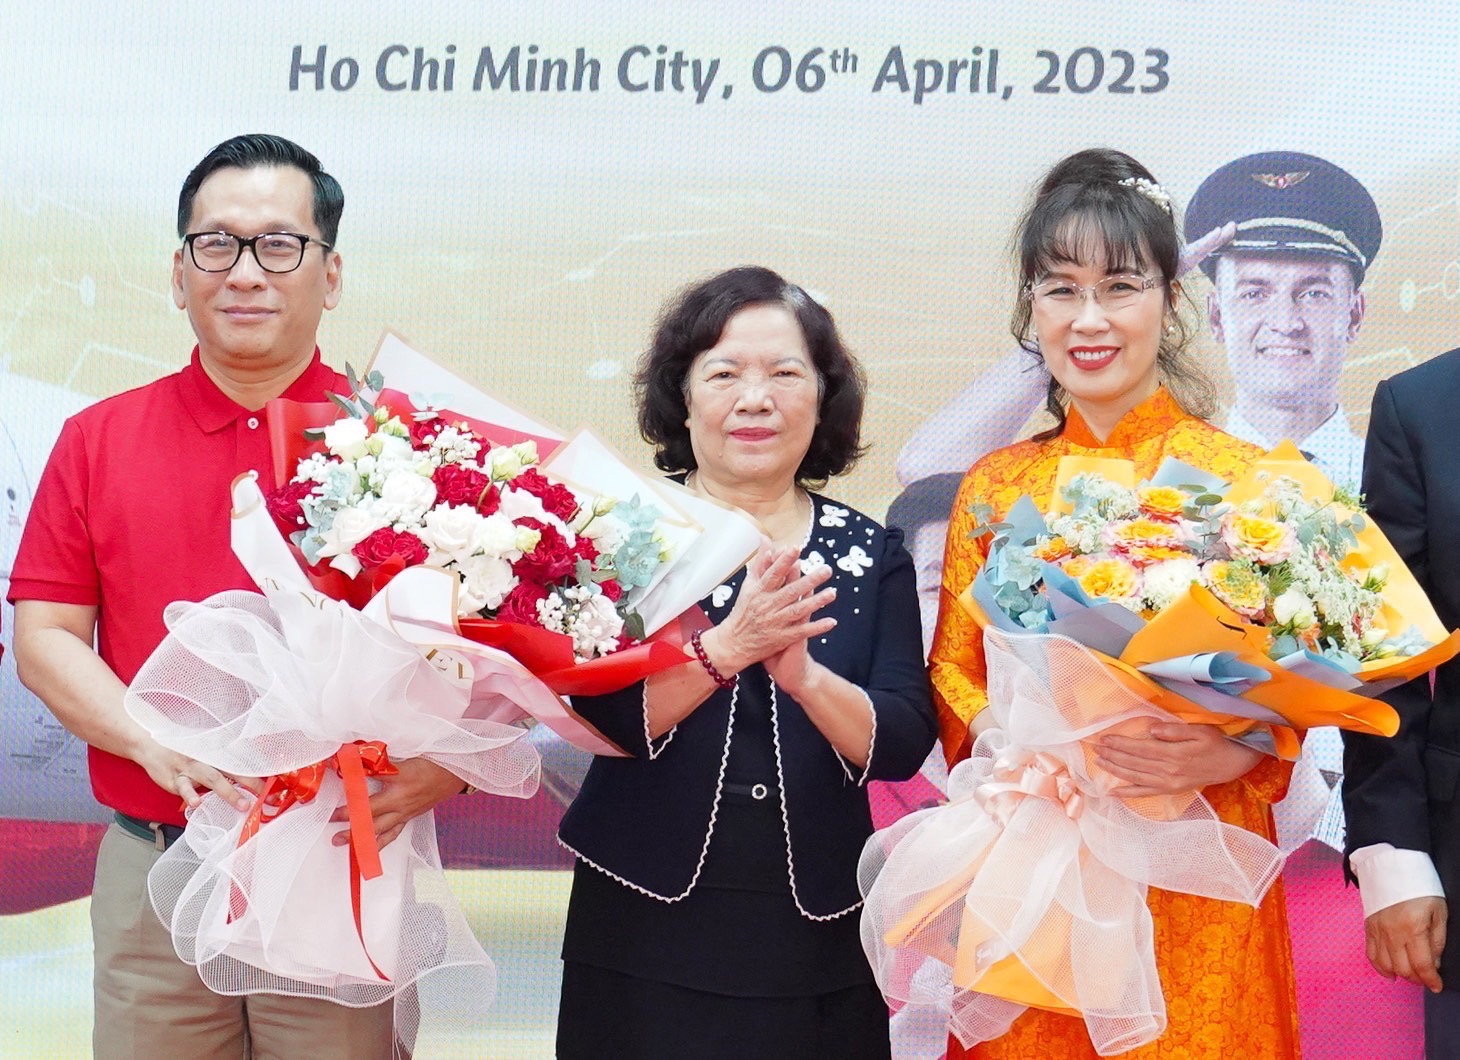 Kinh tế - Bà Nguyễn Thị Phương Thảo làm Chủ tịch Hội đồng Quản trị, Vietjet có Tổng giám đốc mới (Hình 2).